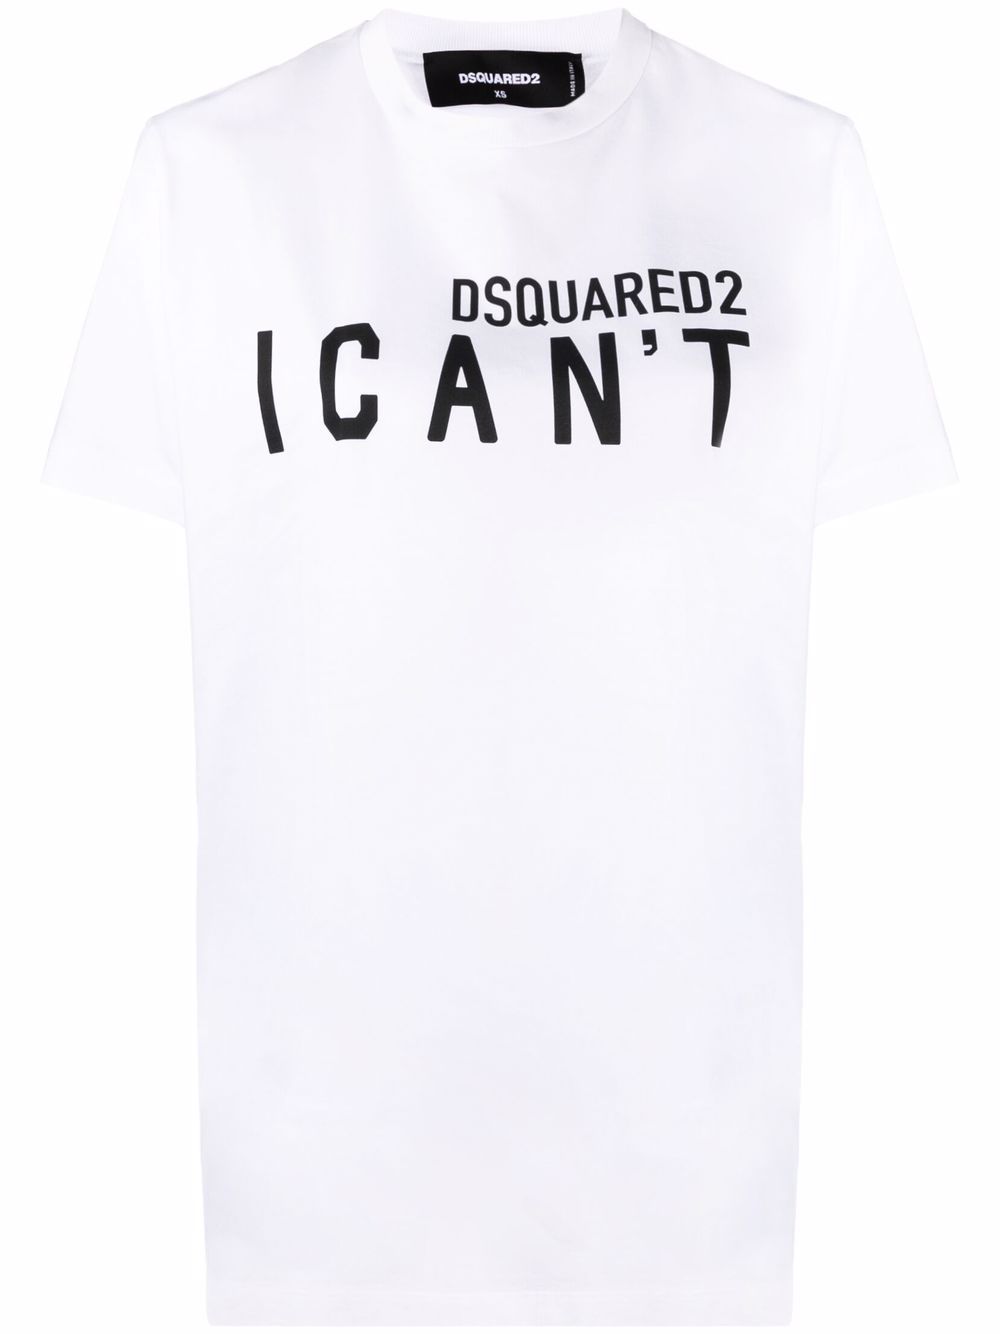 DSQUARED2 I CAN'T 标语印花T恤